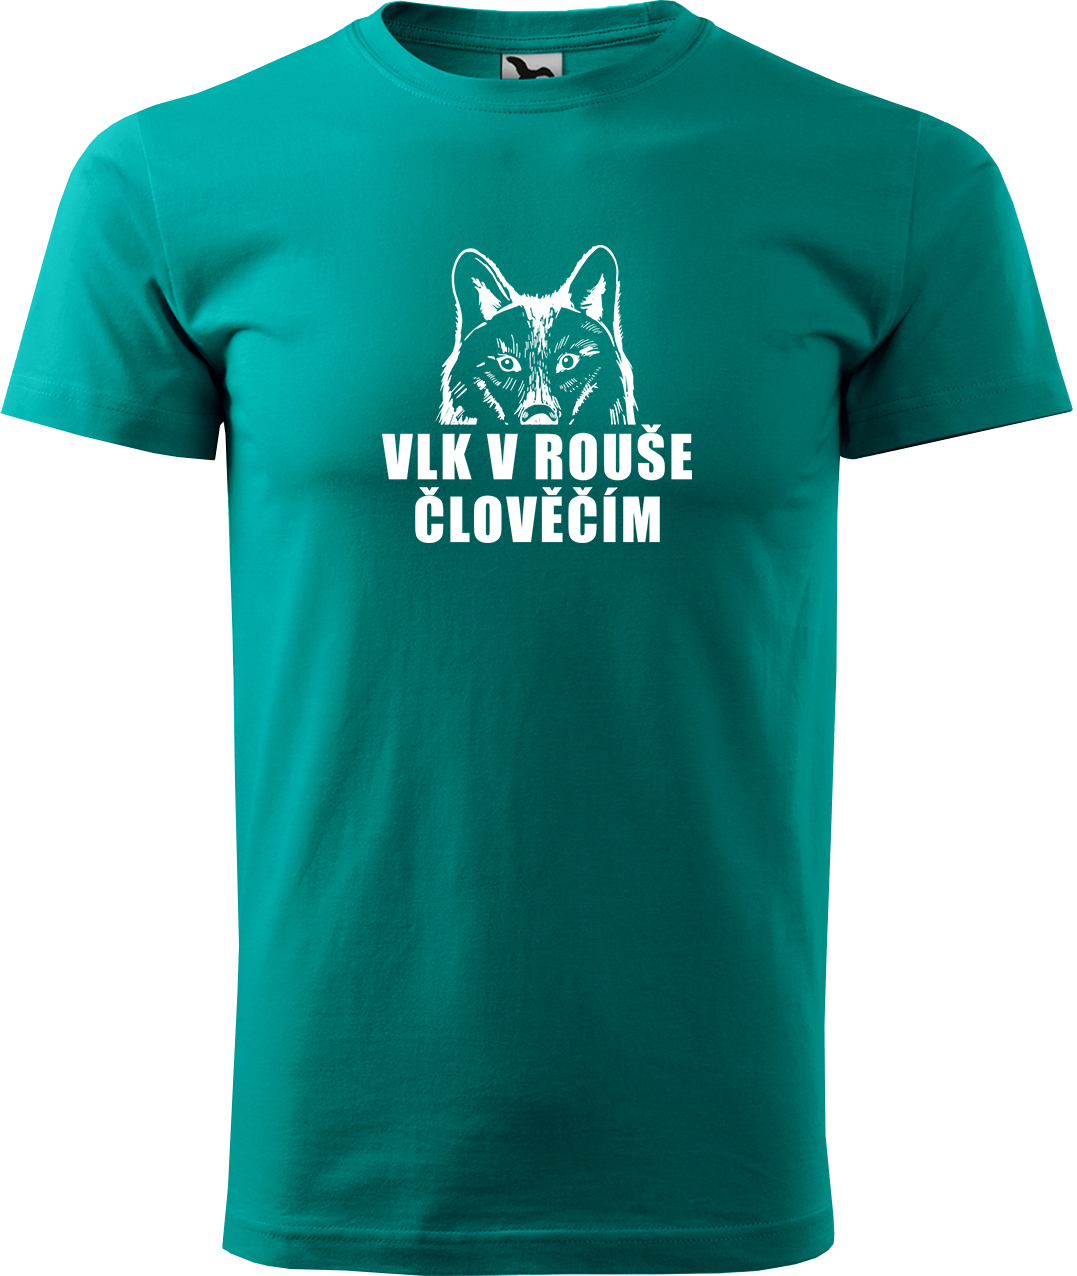 Pánské tričko s vlkem - Vlk v rouše člověčím Velikost: S, Barva: Emerald (19), Střih: pánský